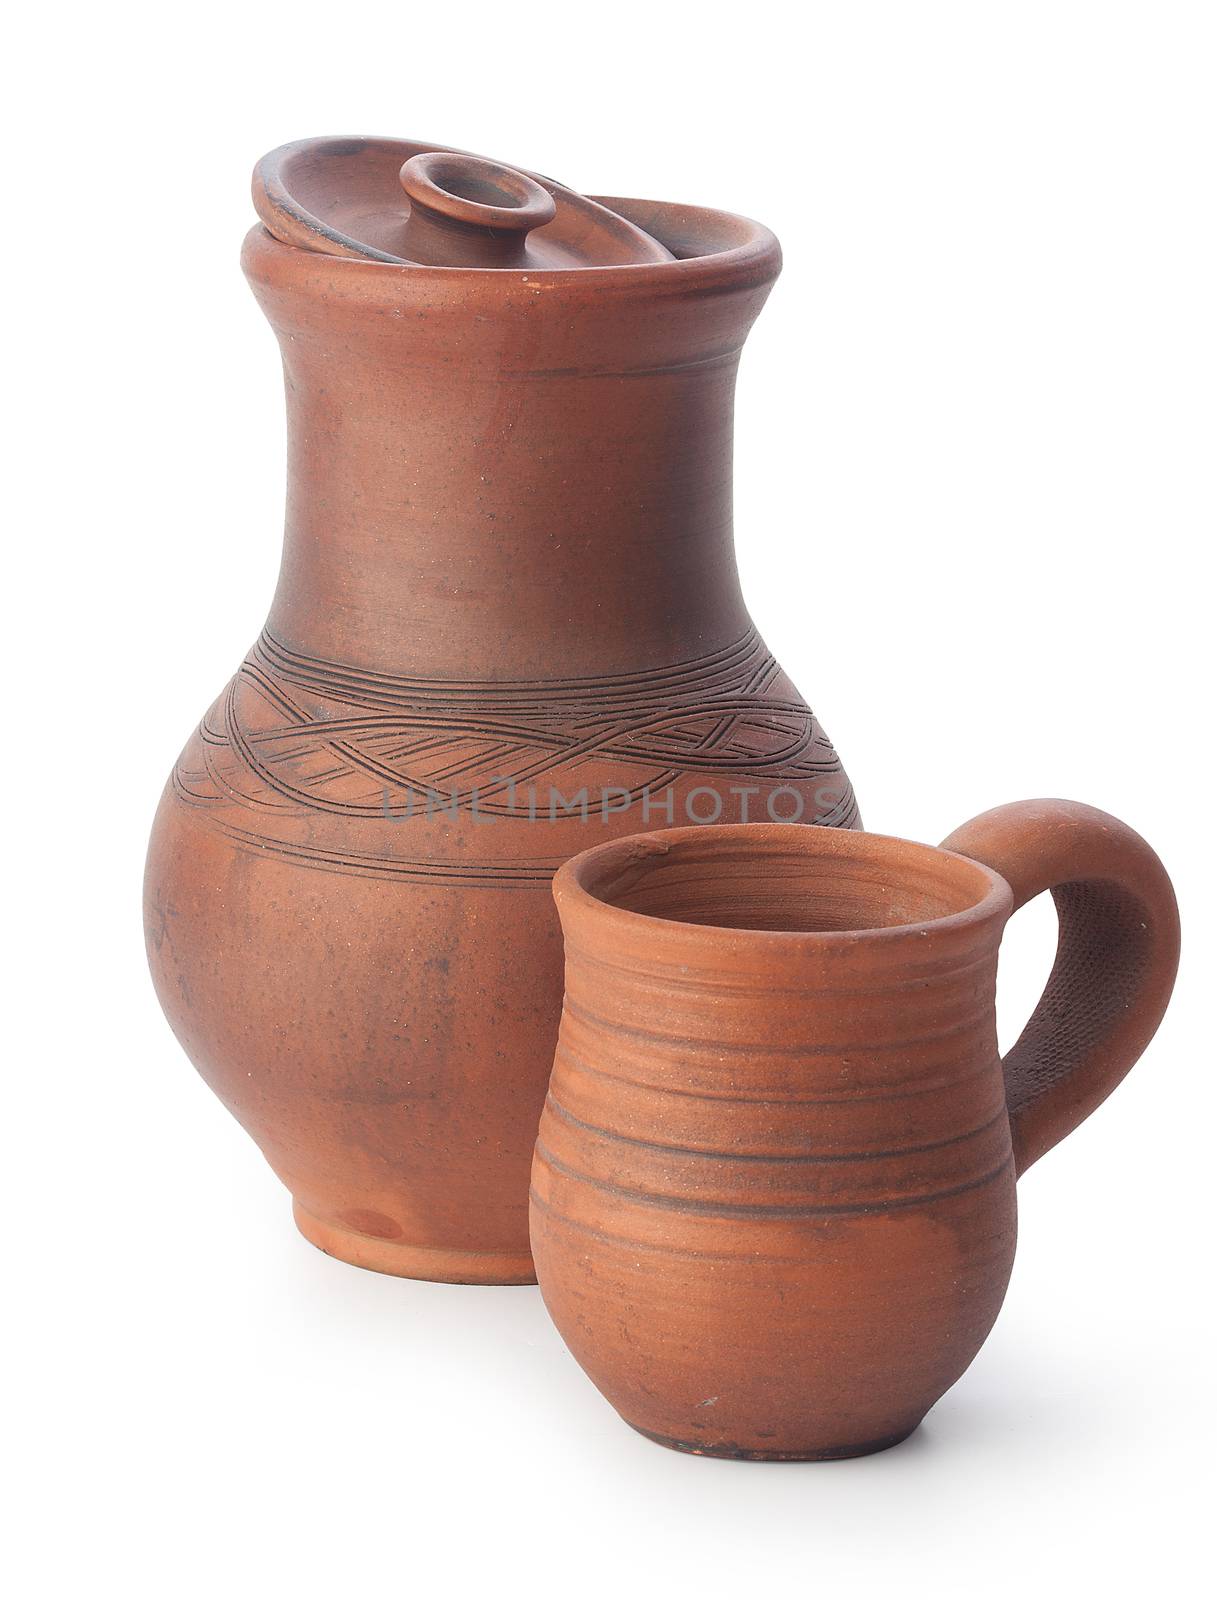 Clay jug and mug by Angorius